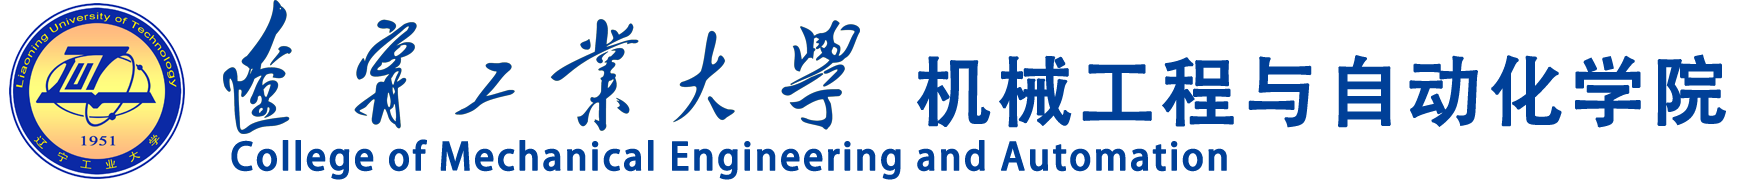 辽宁工业大学机械工程与自动化学院